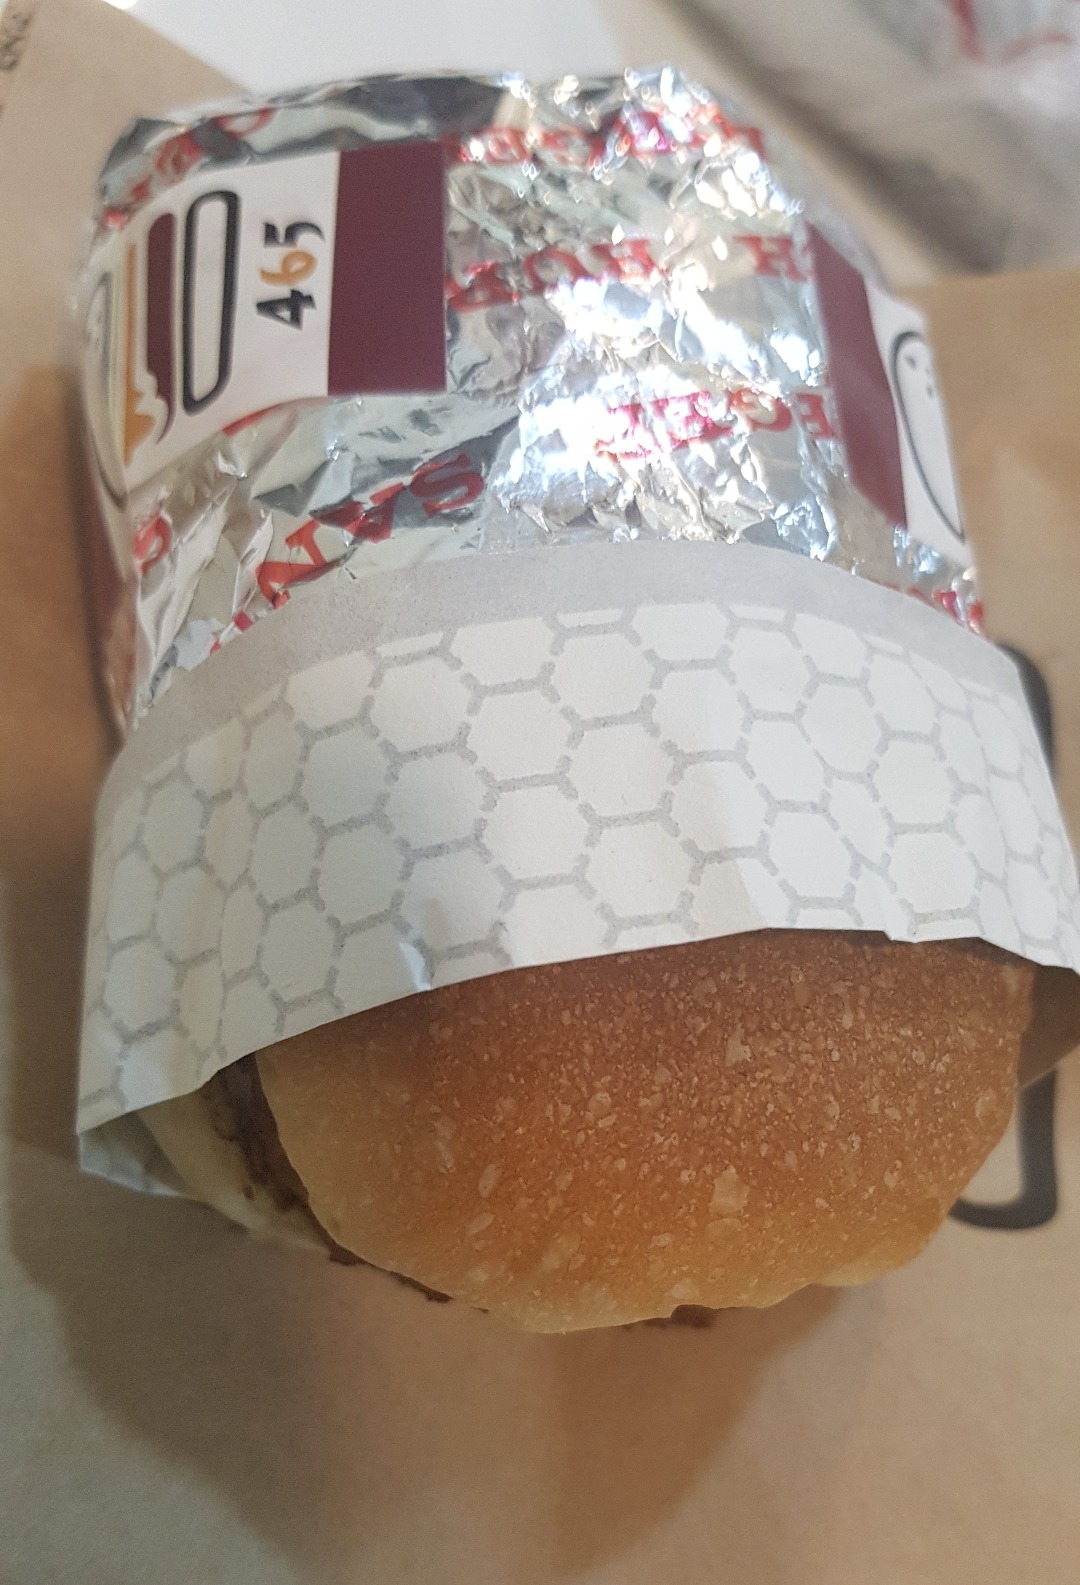 Burger 465 - Bahrain